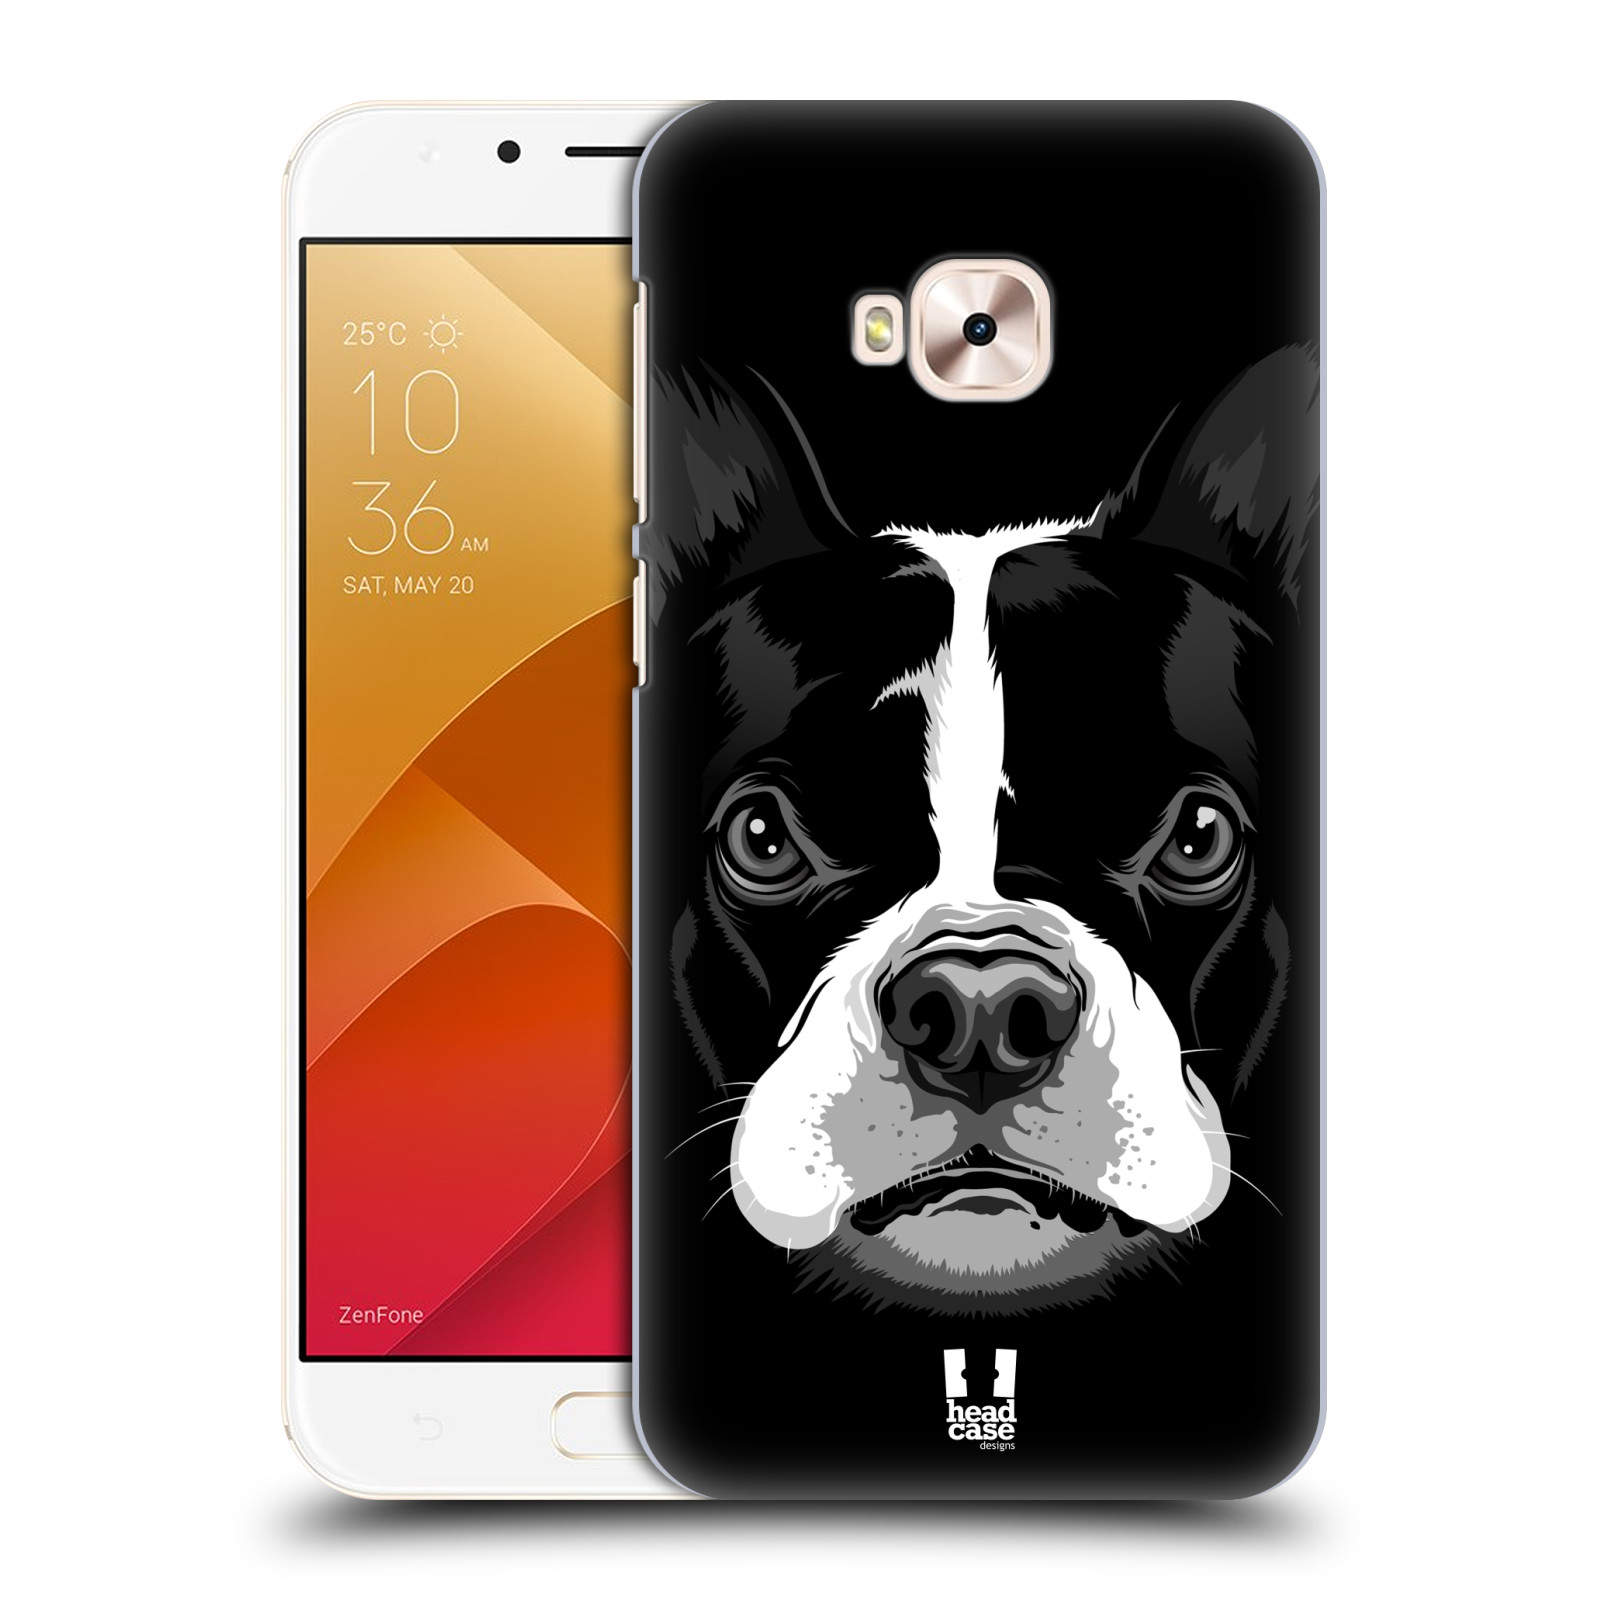 HEAD CASE plastový obal na mobil Asus Zenfone 4 Selfie Pro ZD552KL vzor Zvíře kreslená tvář 2 buldok